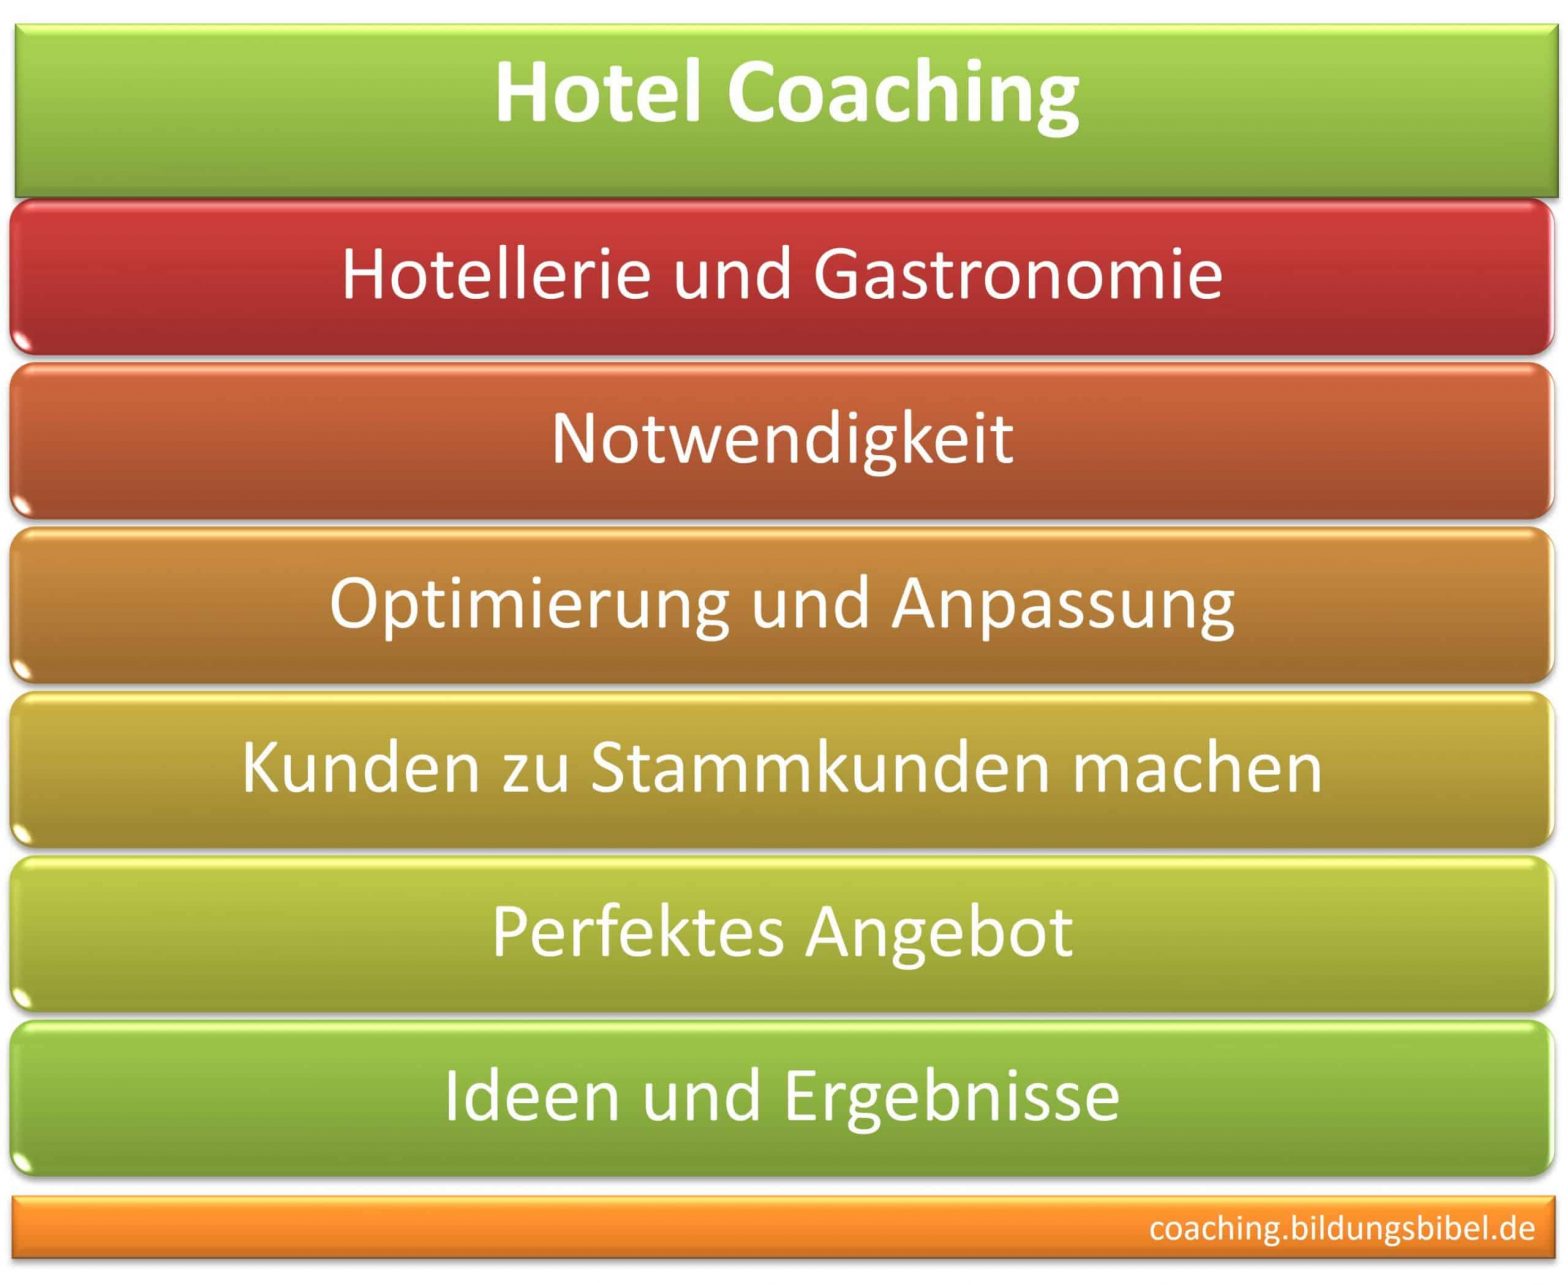 Hotel Coaching und Coach für Beratung, Gastronomie Coaching, Optimierung und Anpassung, Stammkunden gewinnen, starken Ideen und Ergebnisse.